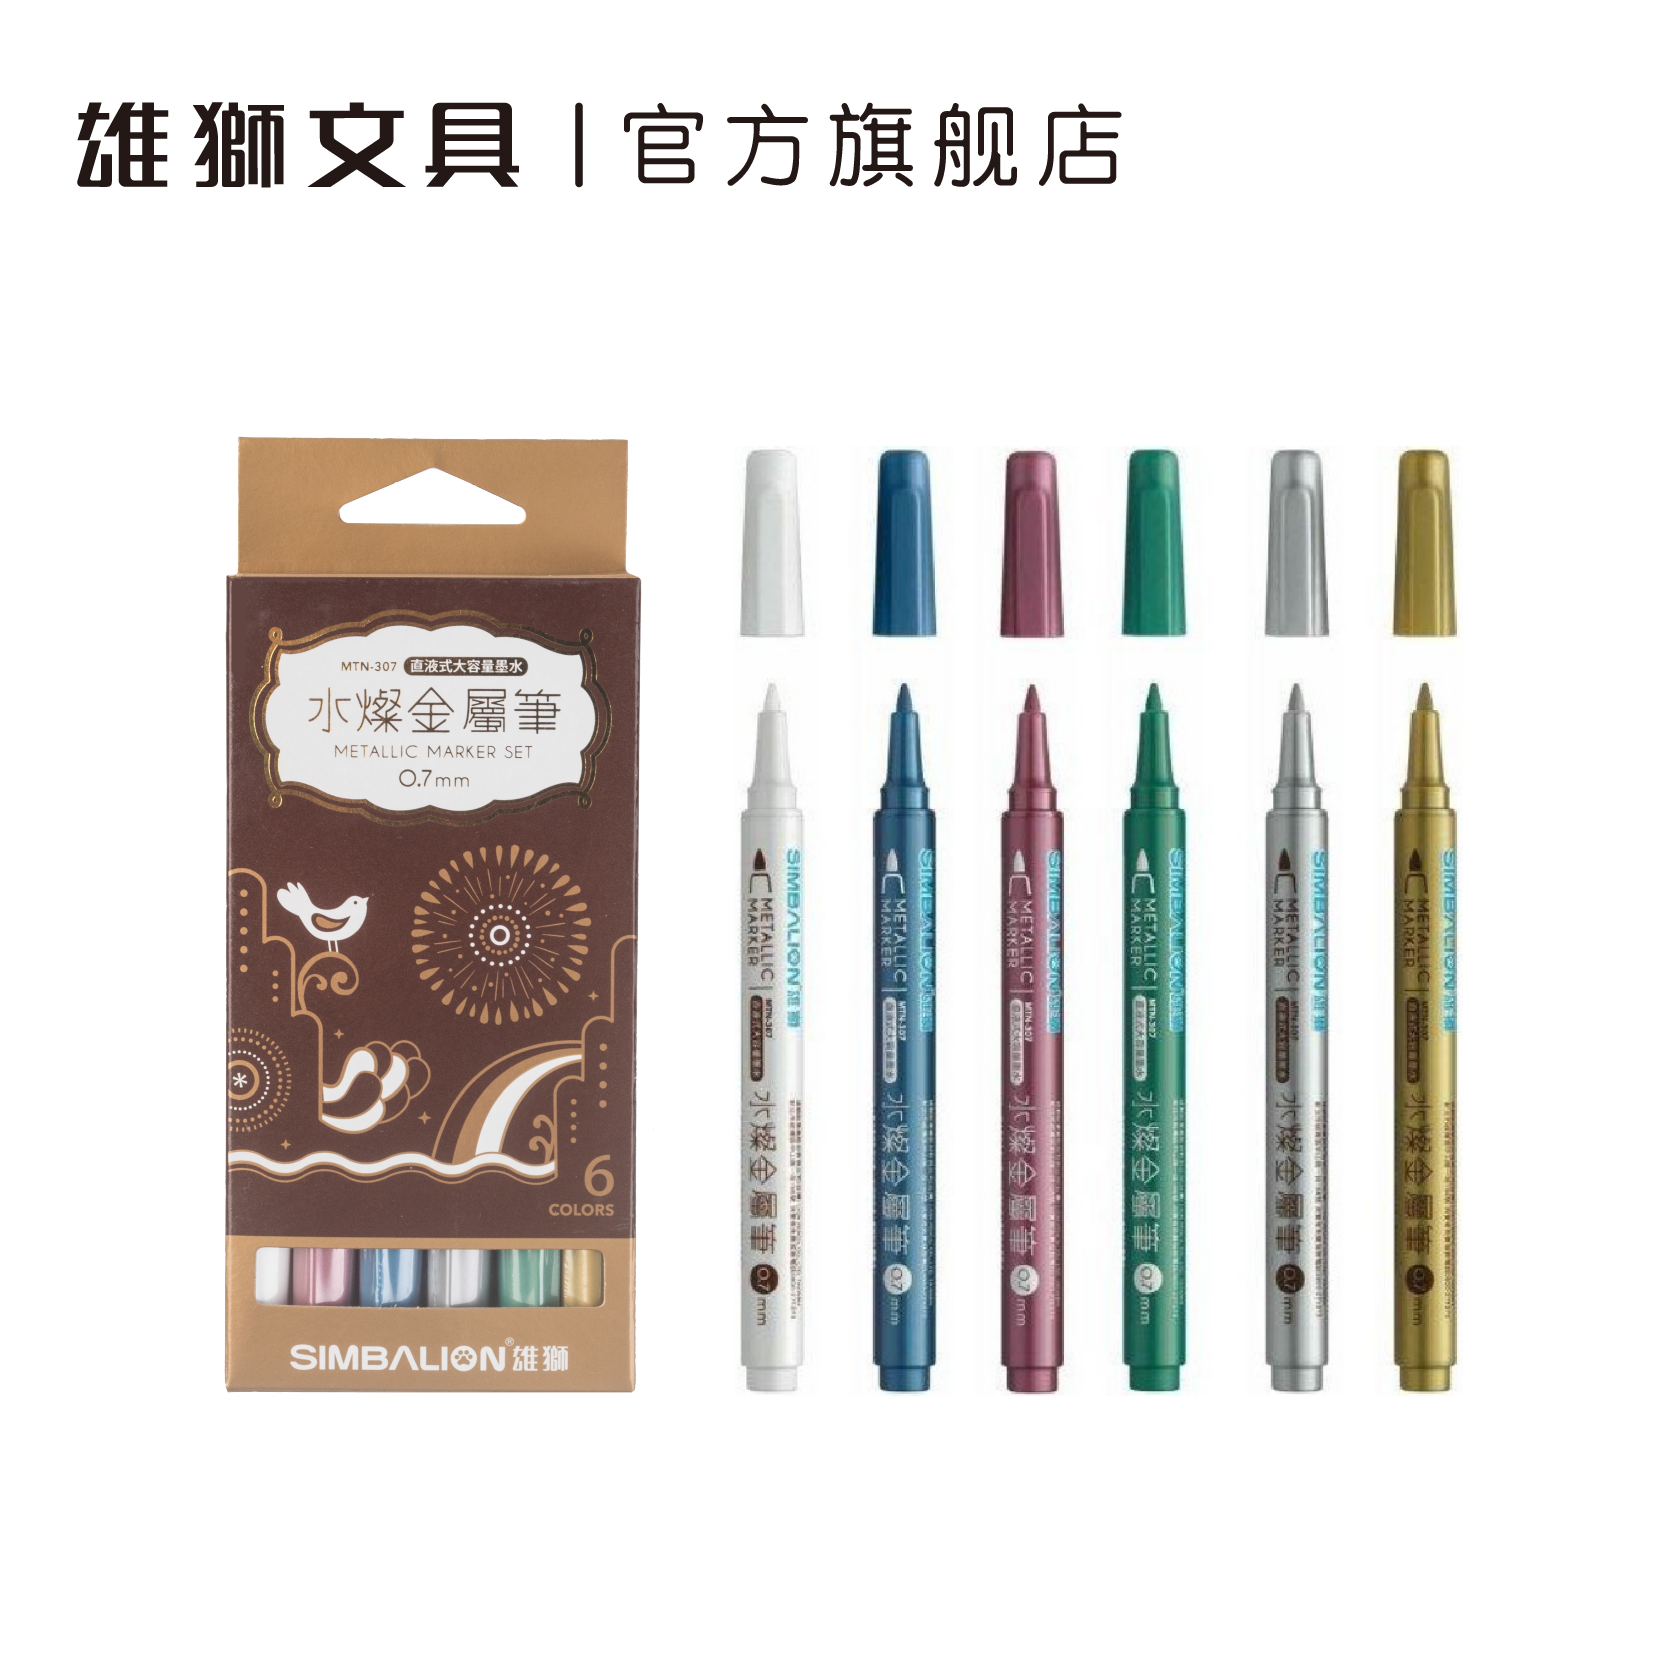 雄狮直液式水灿金属笔0.7mm油漆笔 可用于玻璃木材金属皮革塑料Diy手工创作 绘画标记高光笔 水性油漆笔